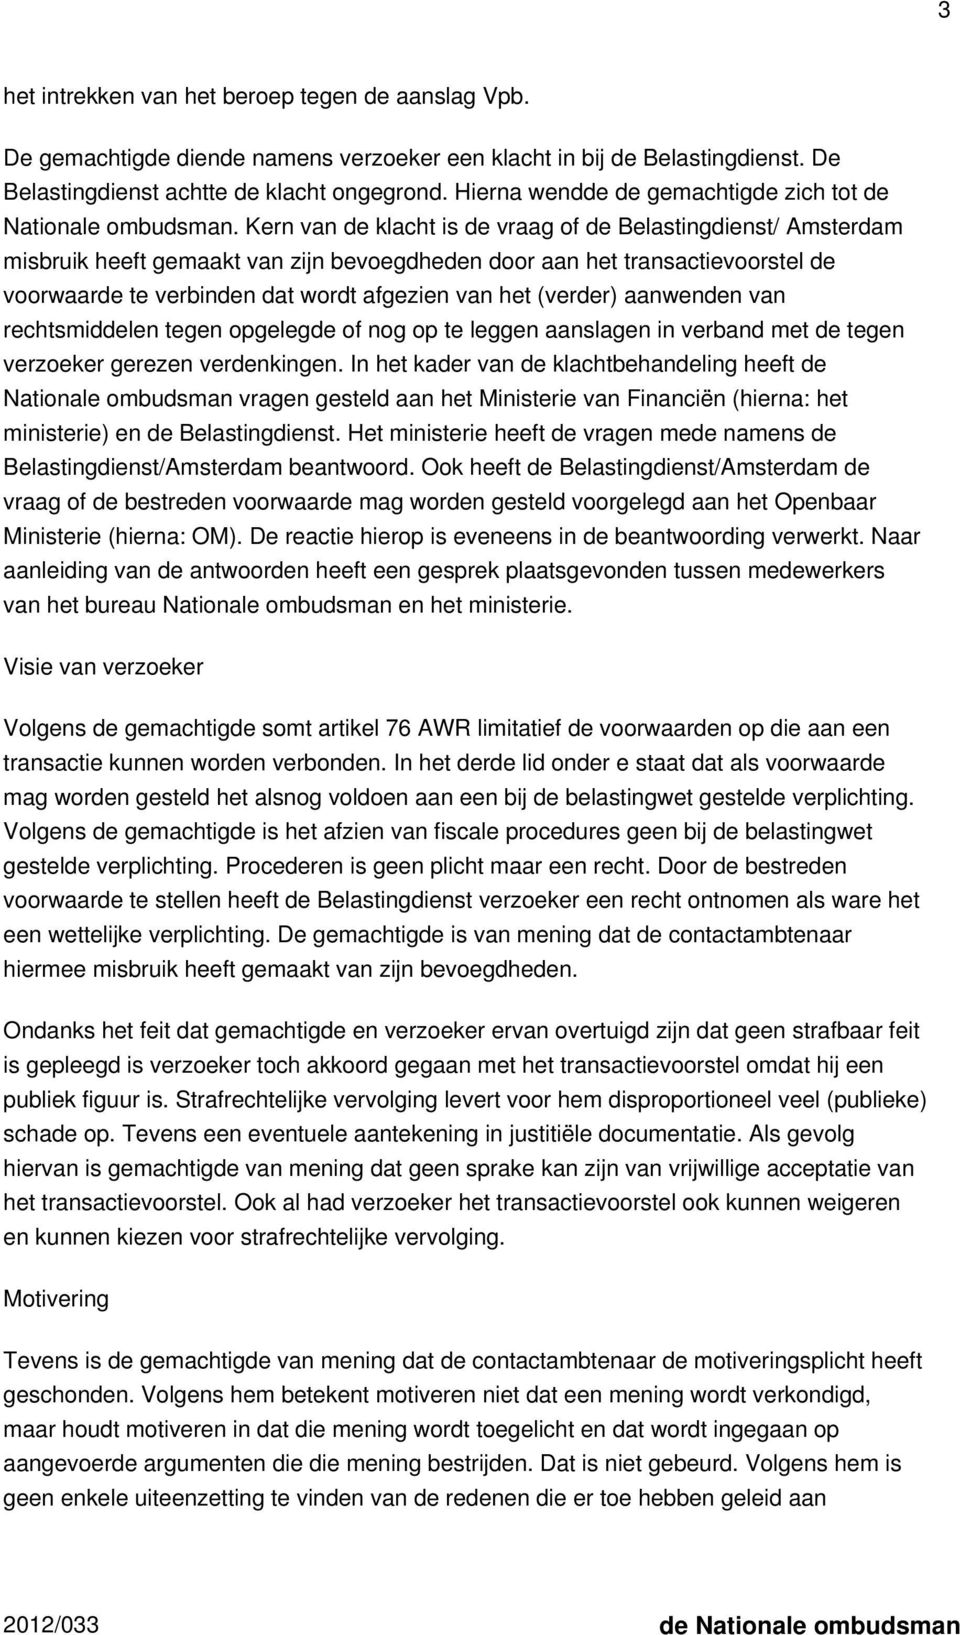 Kern van de klacht is de vraag of de Belastingdienst/ Amsterdam misbruik heeft gemaakt van zijn bevoegdheden door aan het transactievoorstel de voorwaarde te verbinden dat wordt afgezien van het